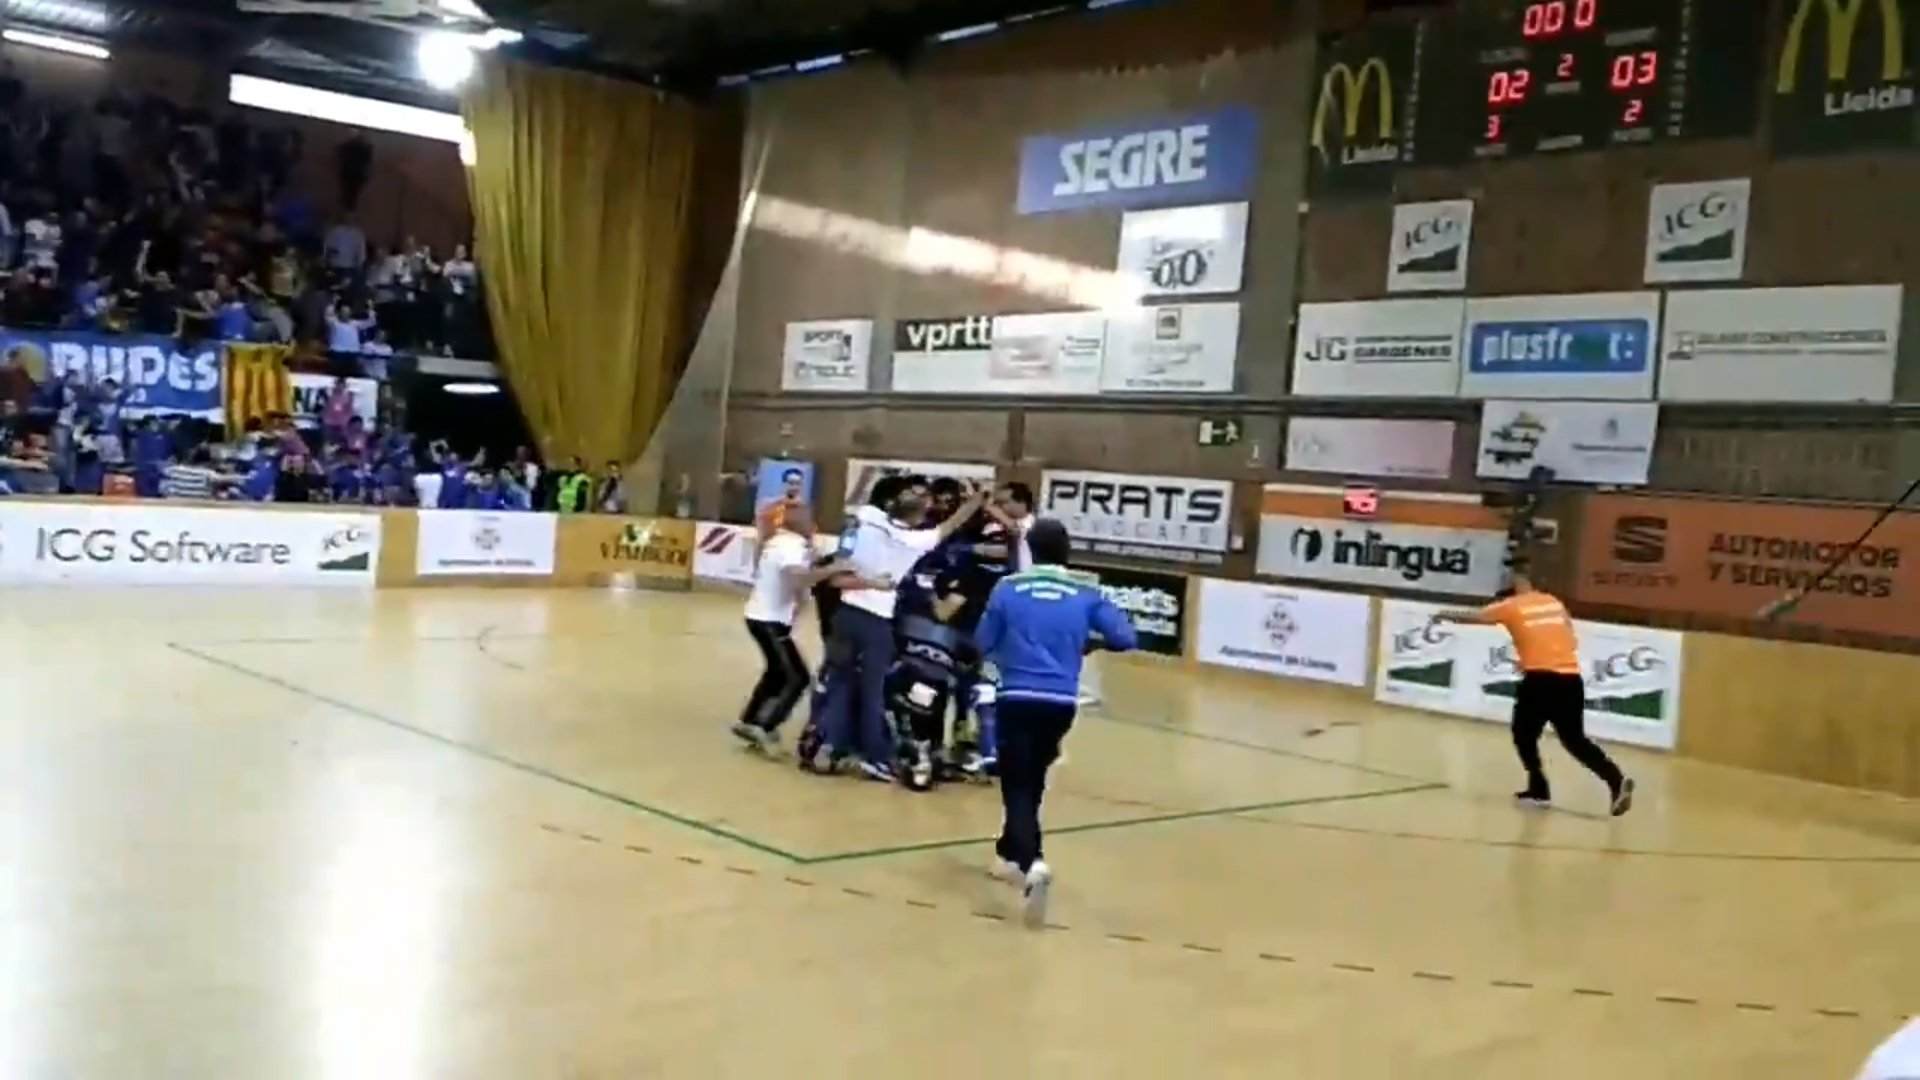 El Lleida d'hoquei patins es proclama campió de la CERS als penals (2-2)